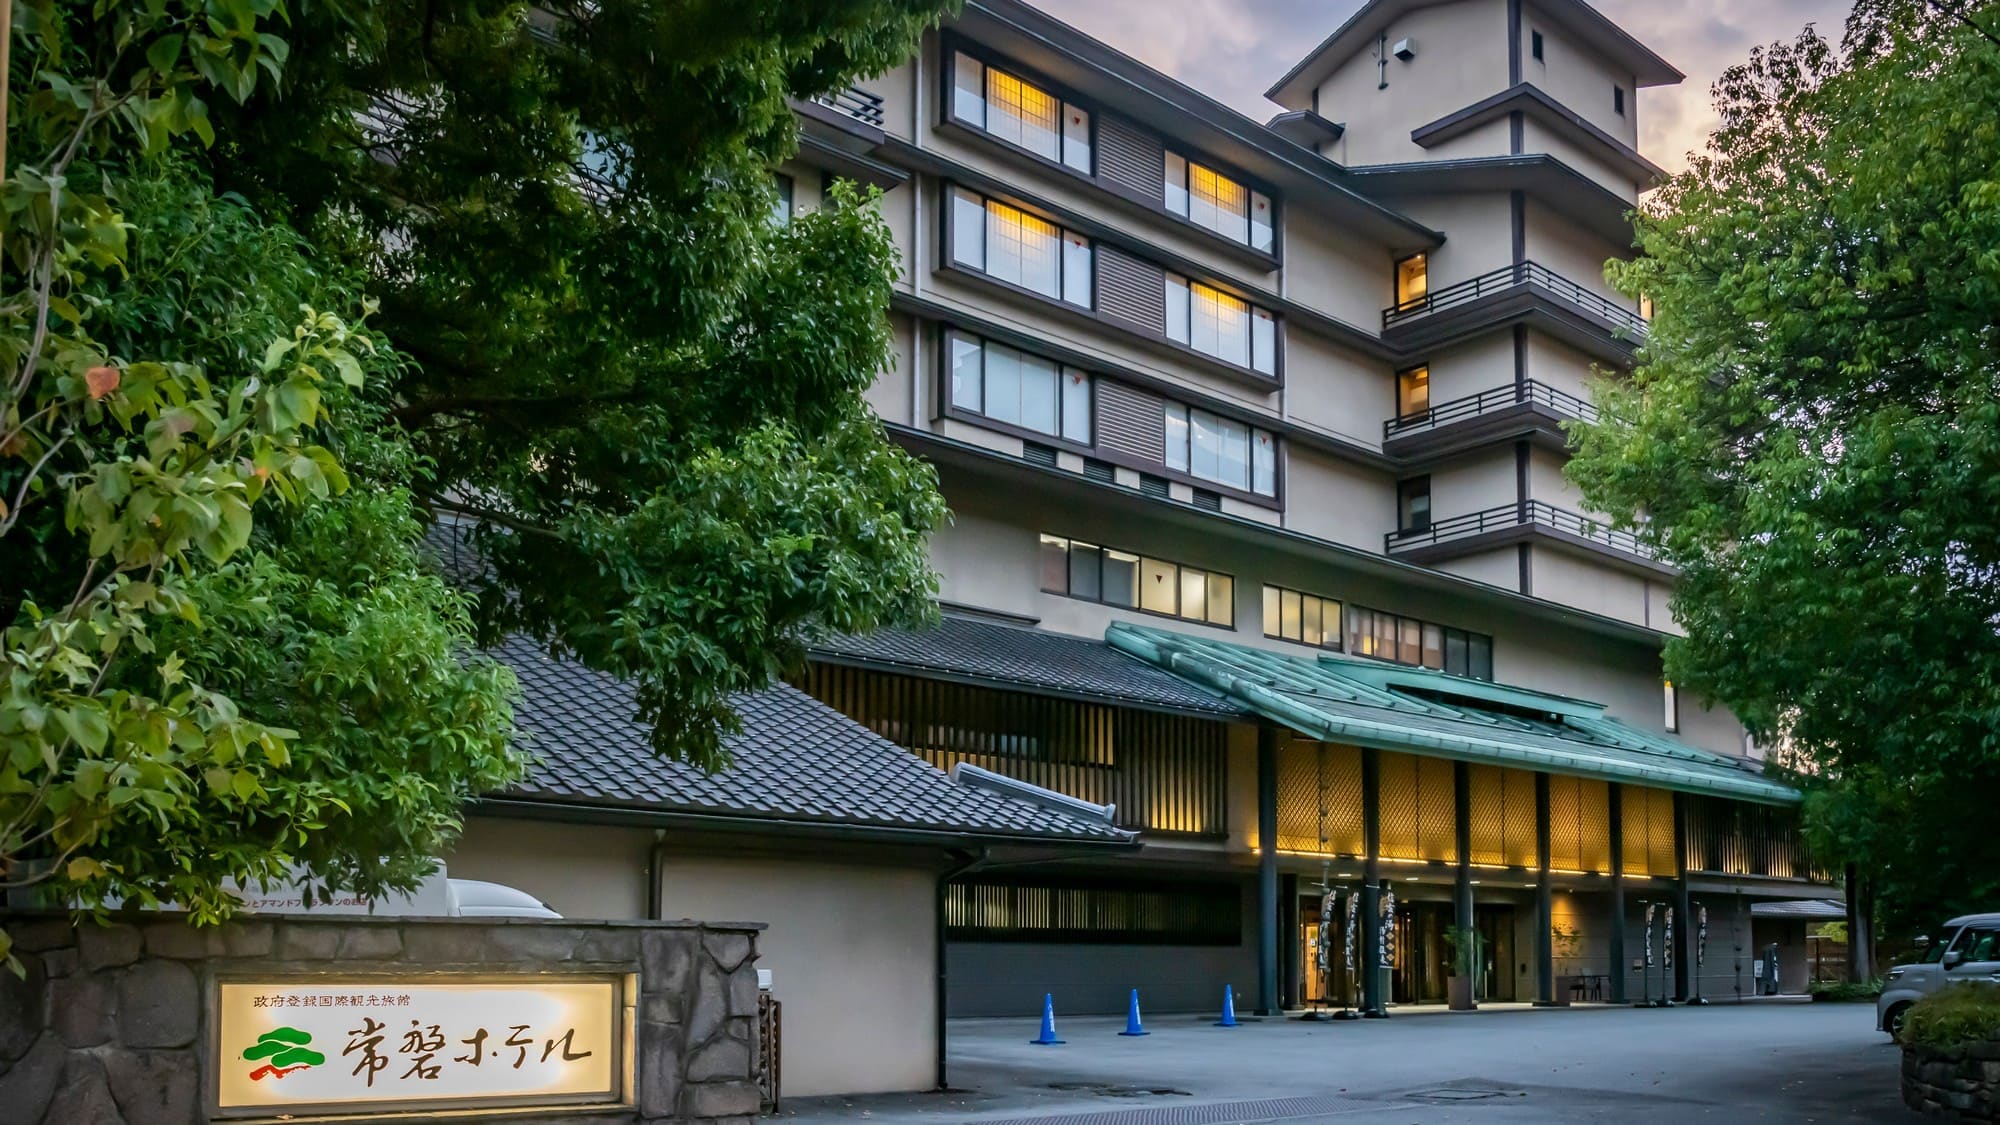 兼具日本旅馆的感性与都市旅馆的便利的皇室也使用的旅馆。